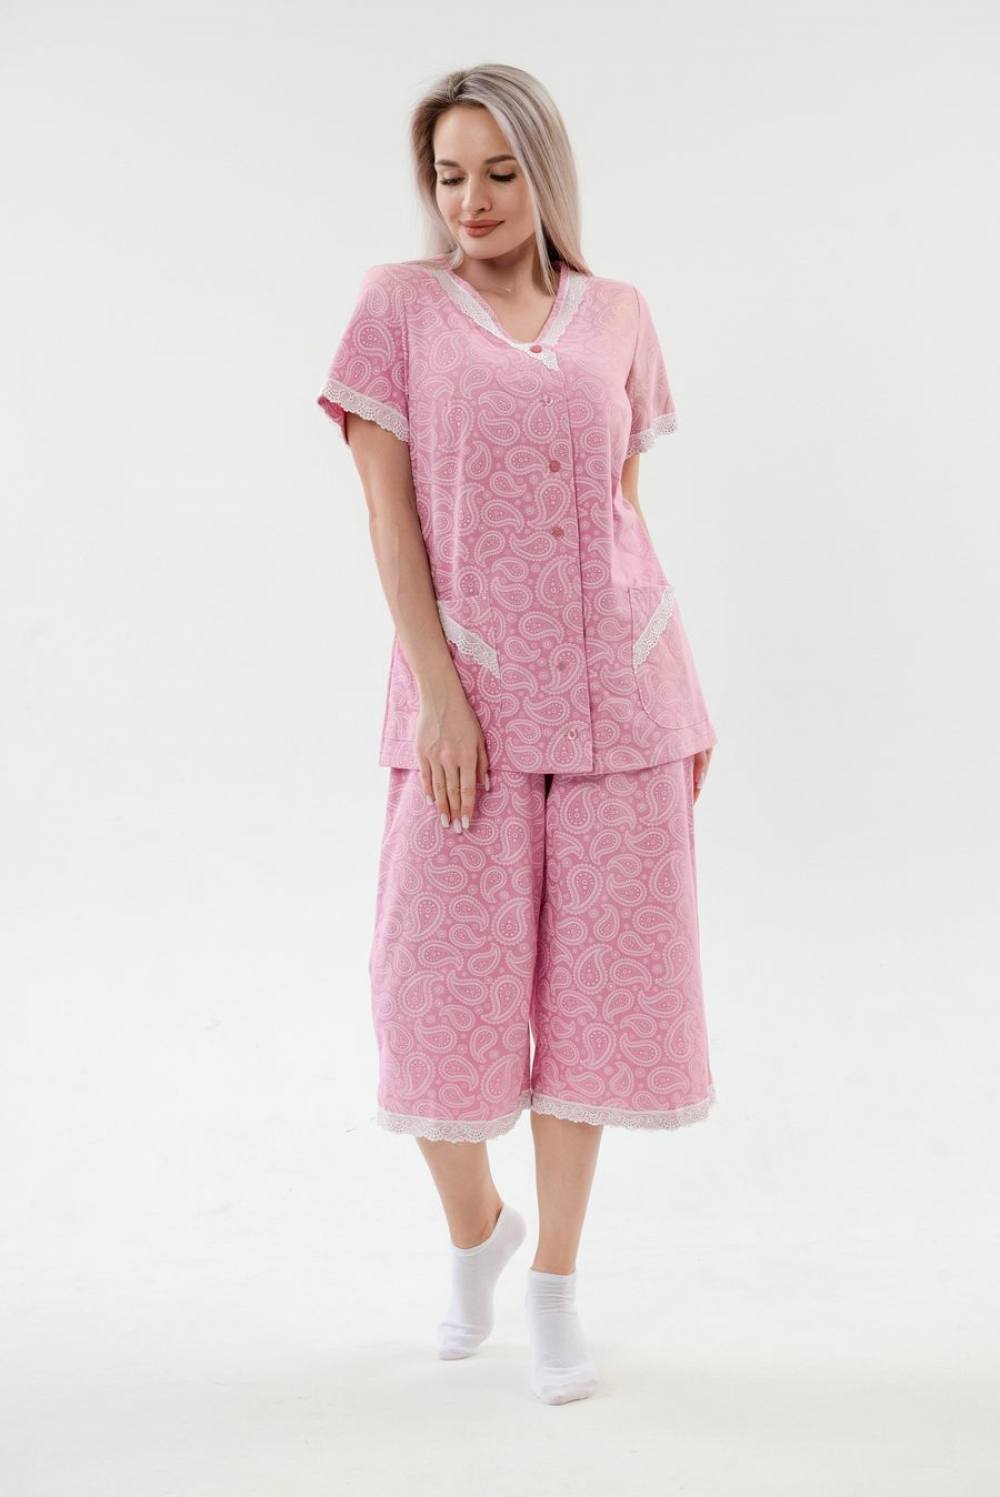 Пижама женская с бриджами. Артикул 000005445